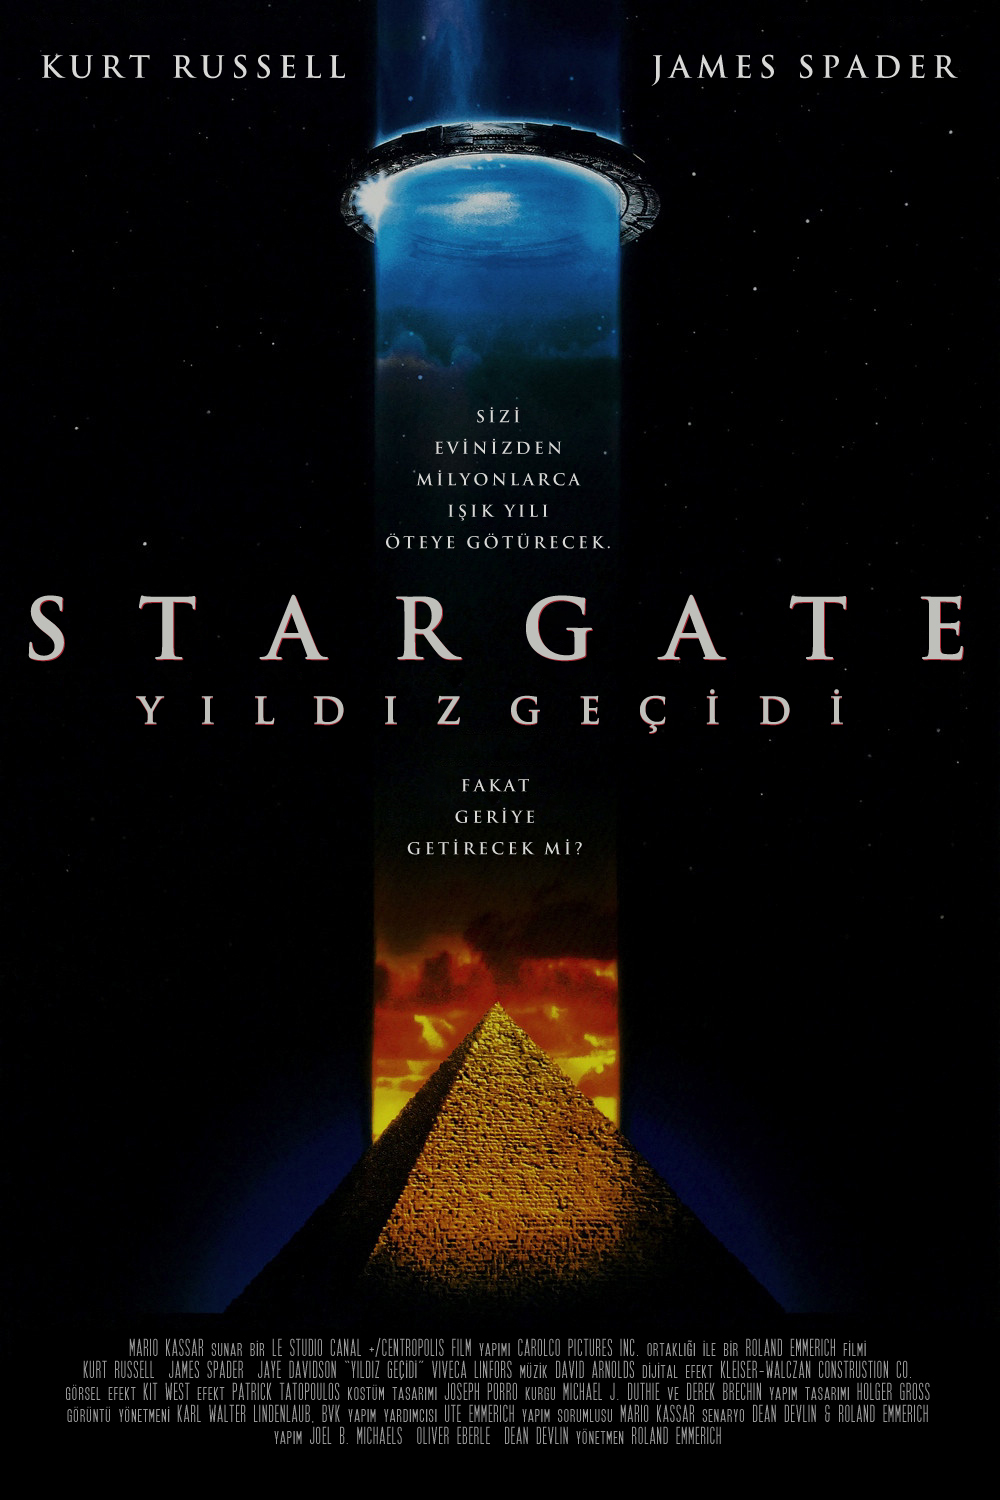 stargate movie poster yıldız geçidi Sci Fi